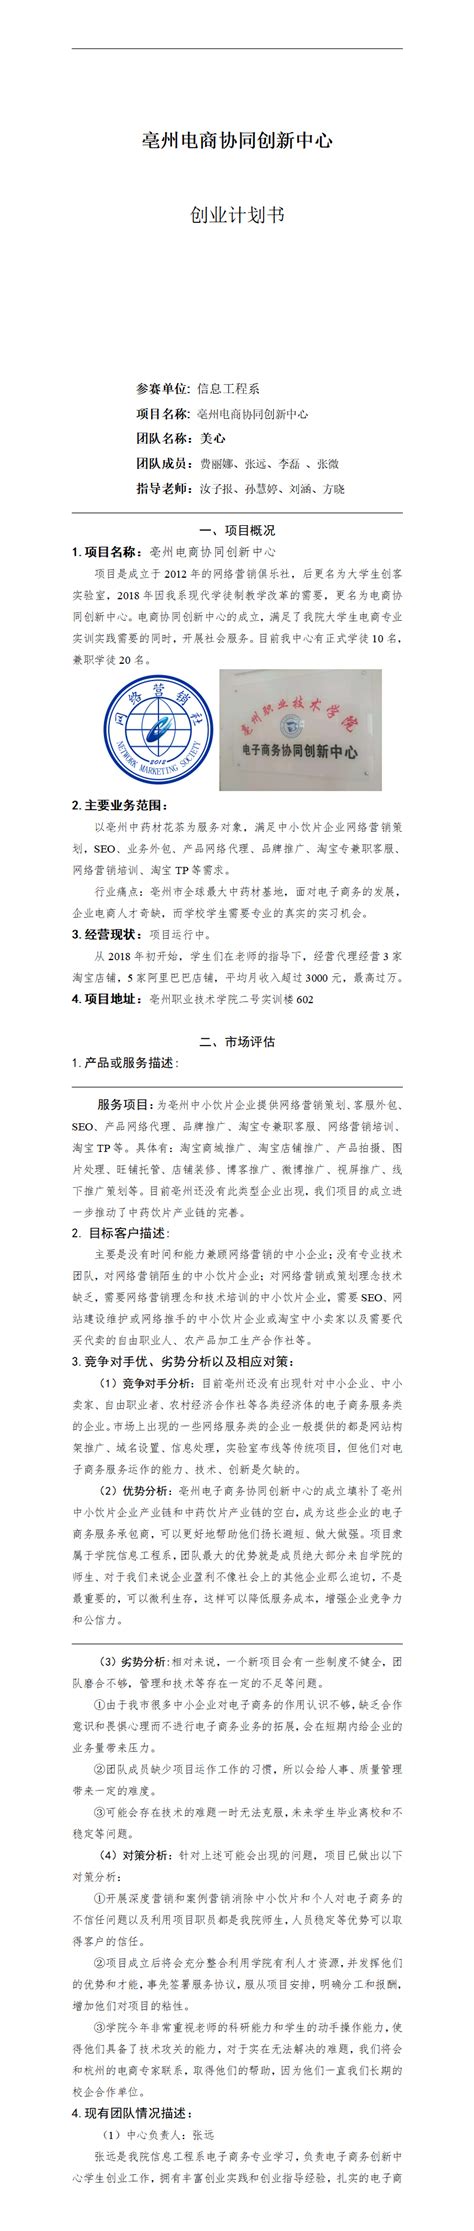 亳州市电子商务协调创新中心计划书-创赛网-CNCHUANGSAI创赛中国